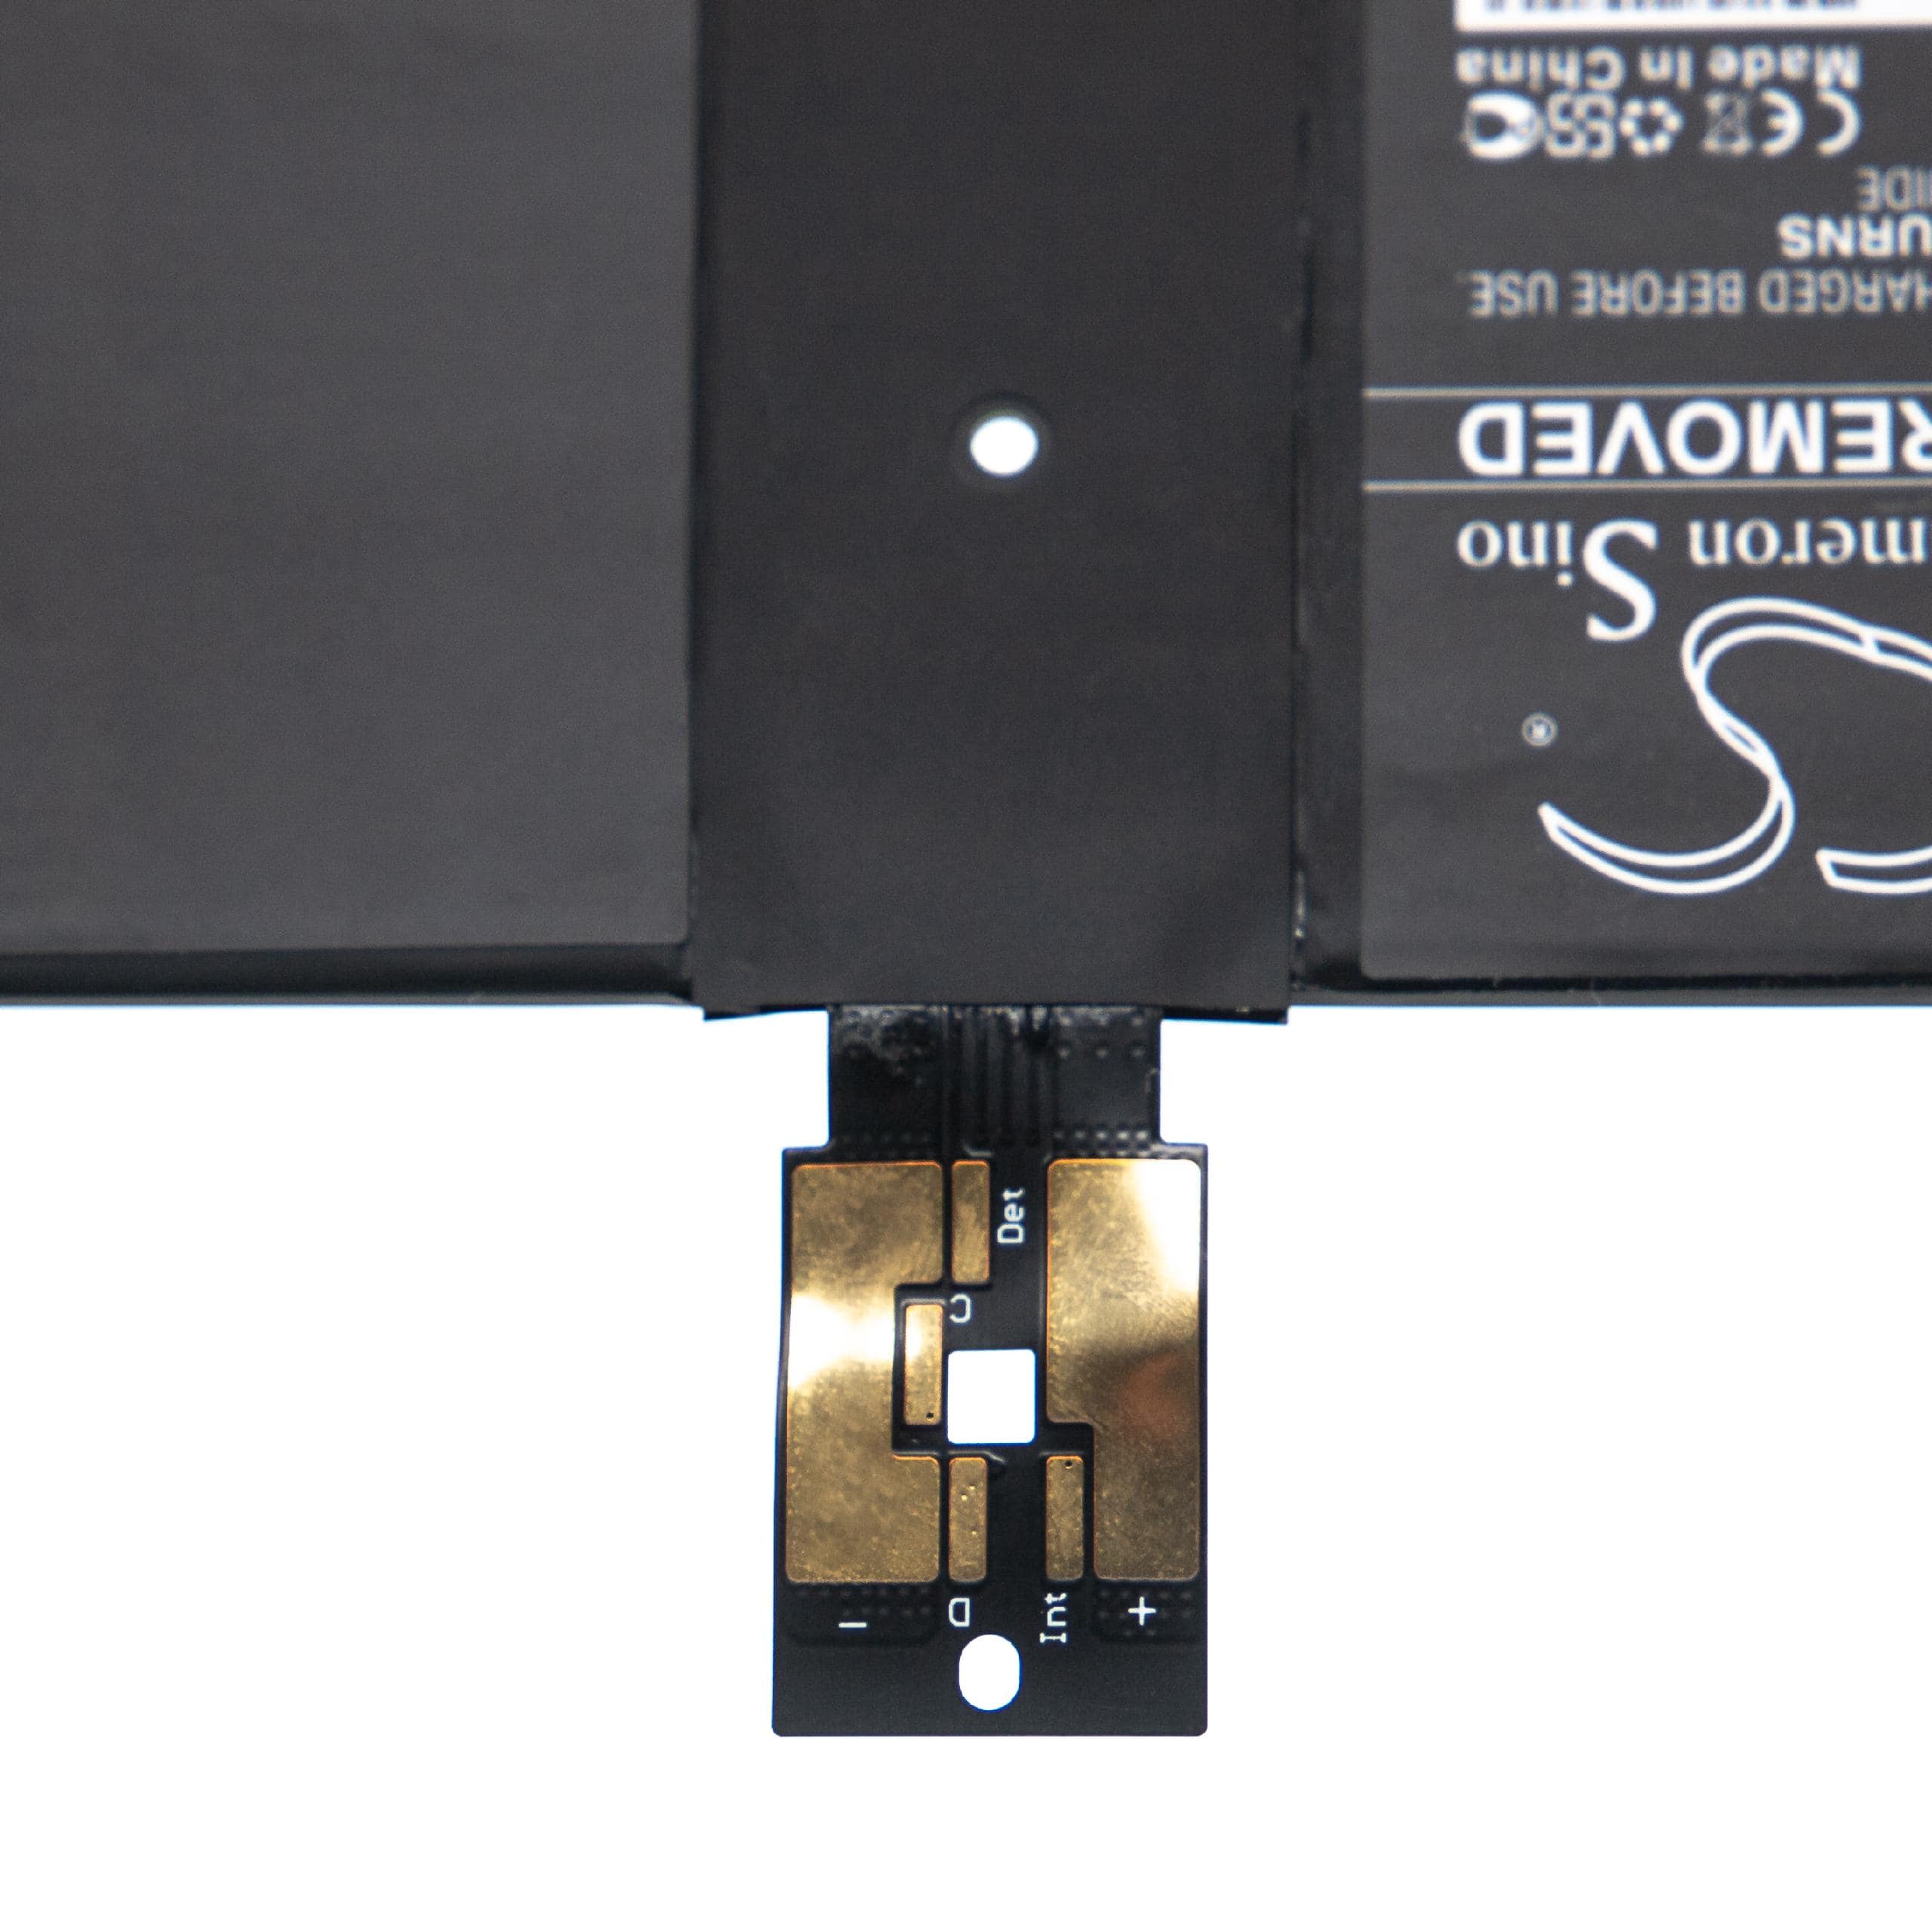 Batterie remplace Microsoft DYNK01, G3HTA036H pour ordinateur portable - 5900mAh 7,57V Li-polymère, noir